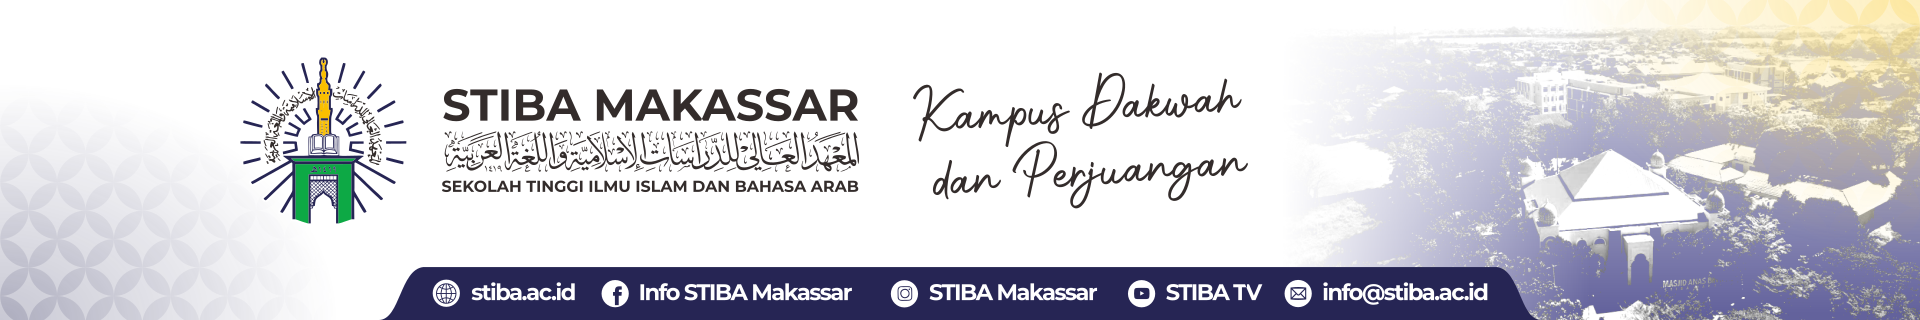 STIBA Makassar